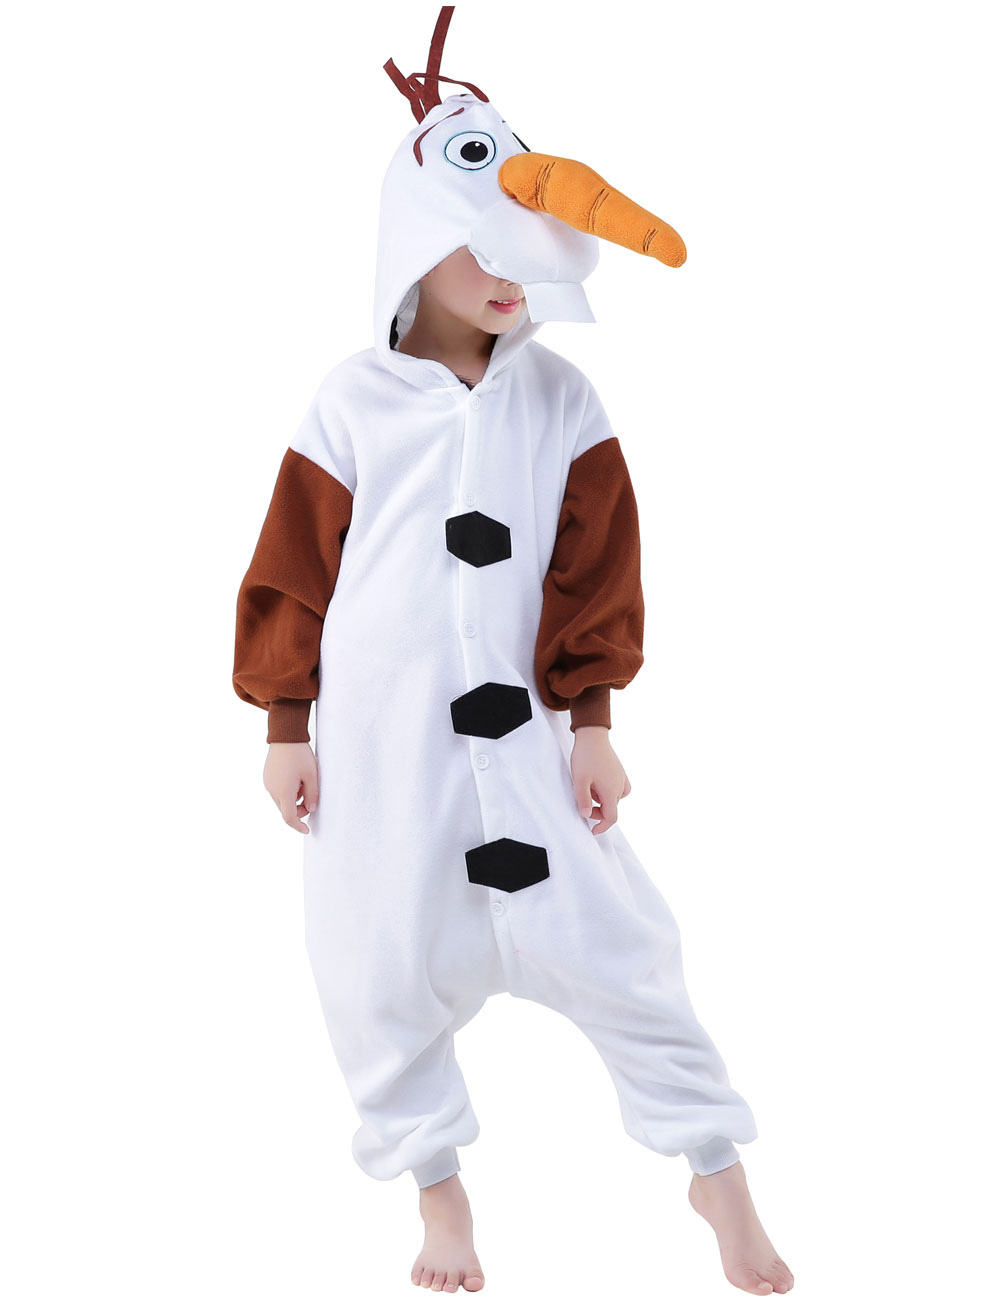 Auroch scheren skelet Kigurumi Pajamas Frozen Olaf Onesie Childrens White Flannel Winter  Sleepwear Mascot Animal Costume Halloween - Costumeslive.com